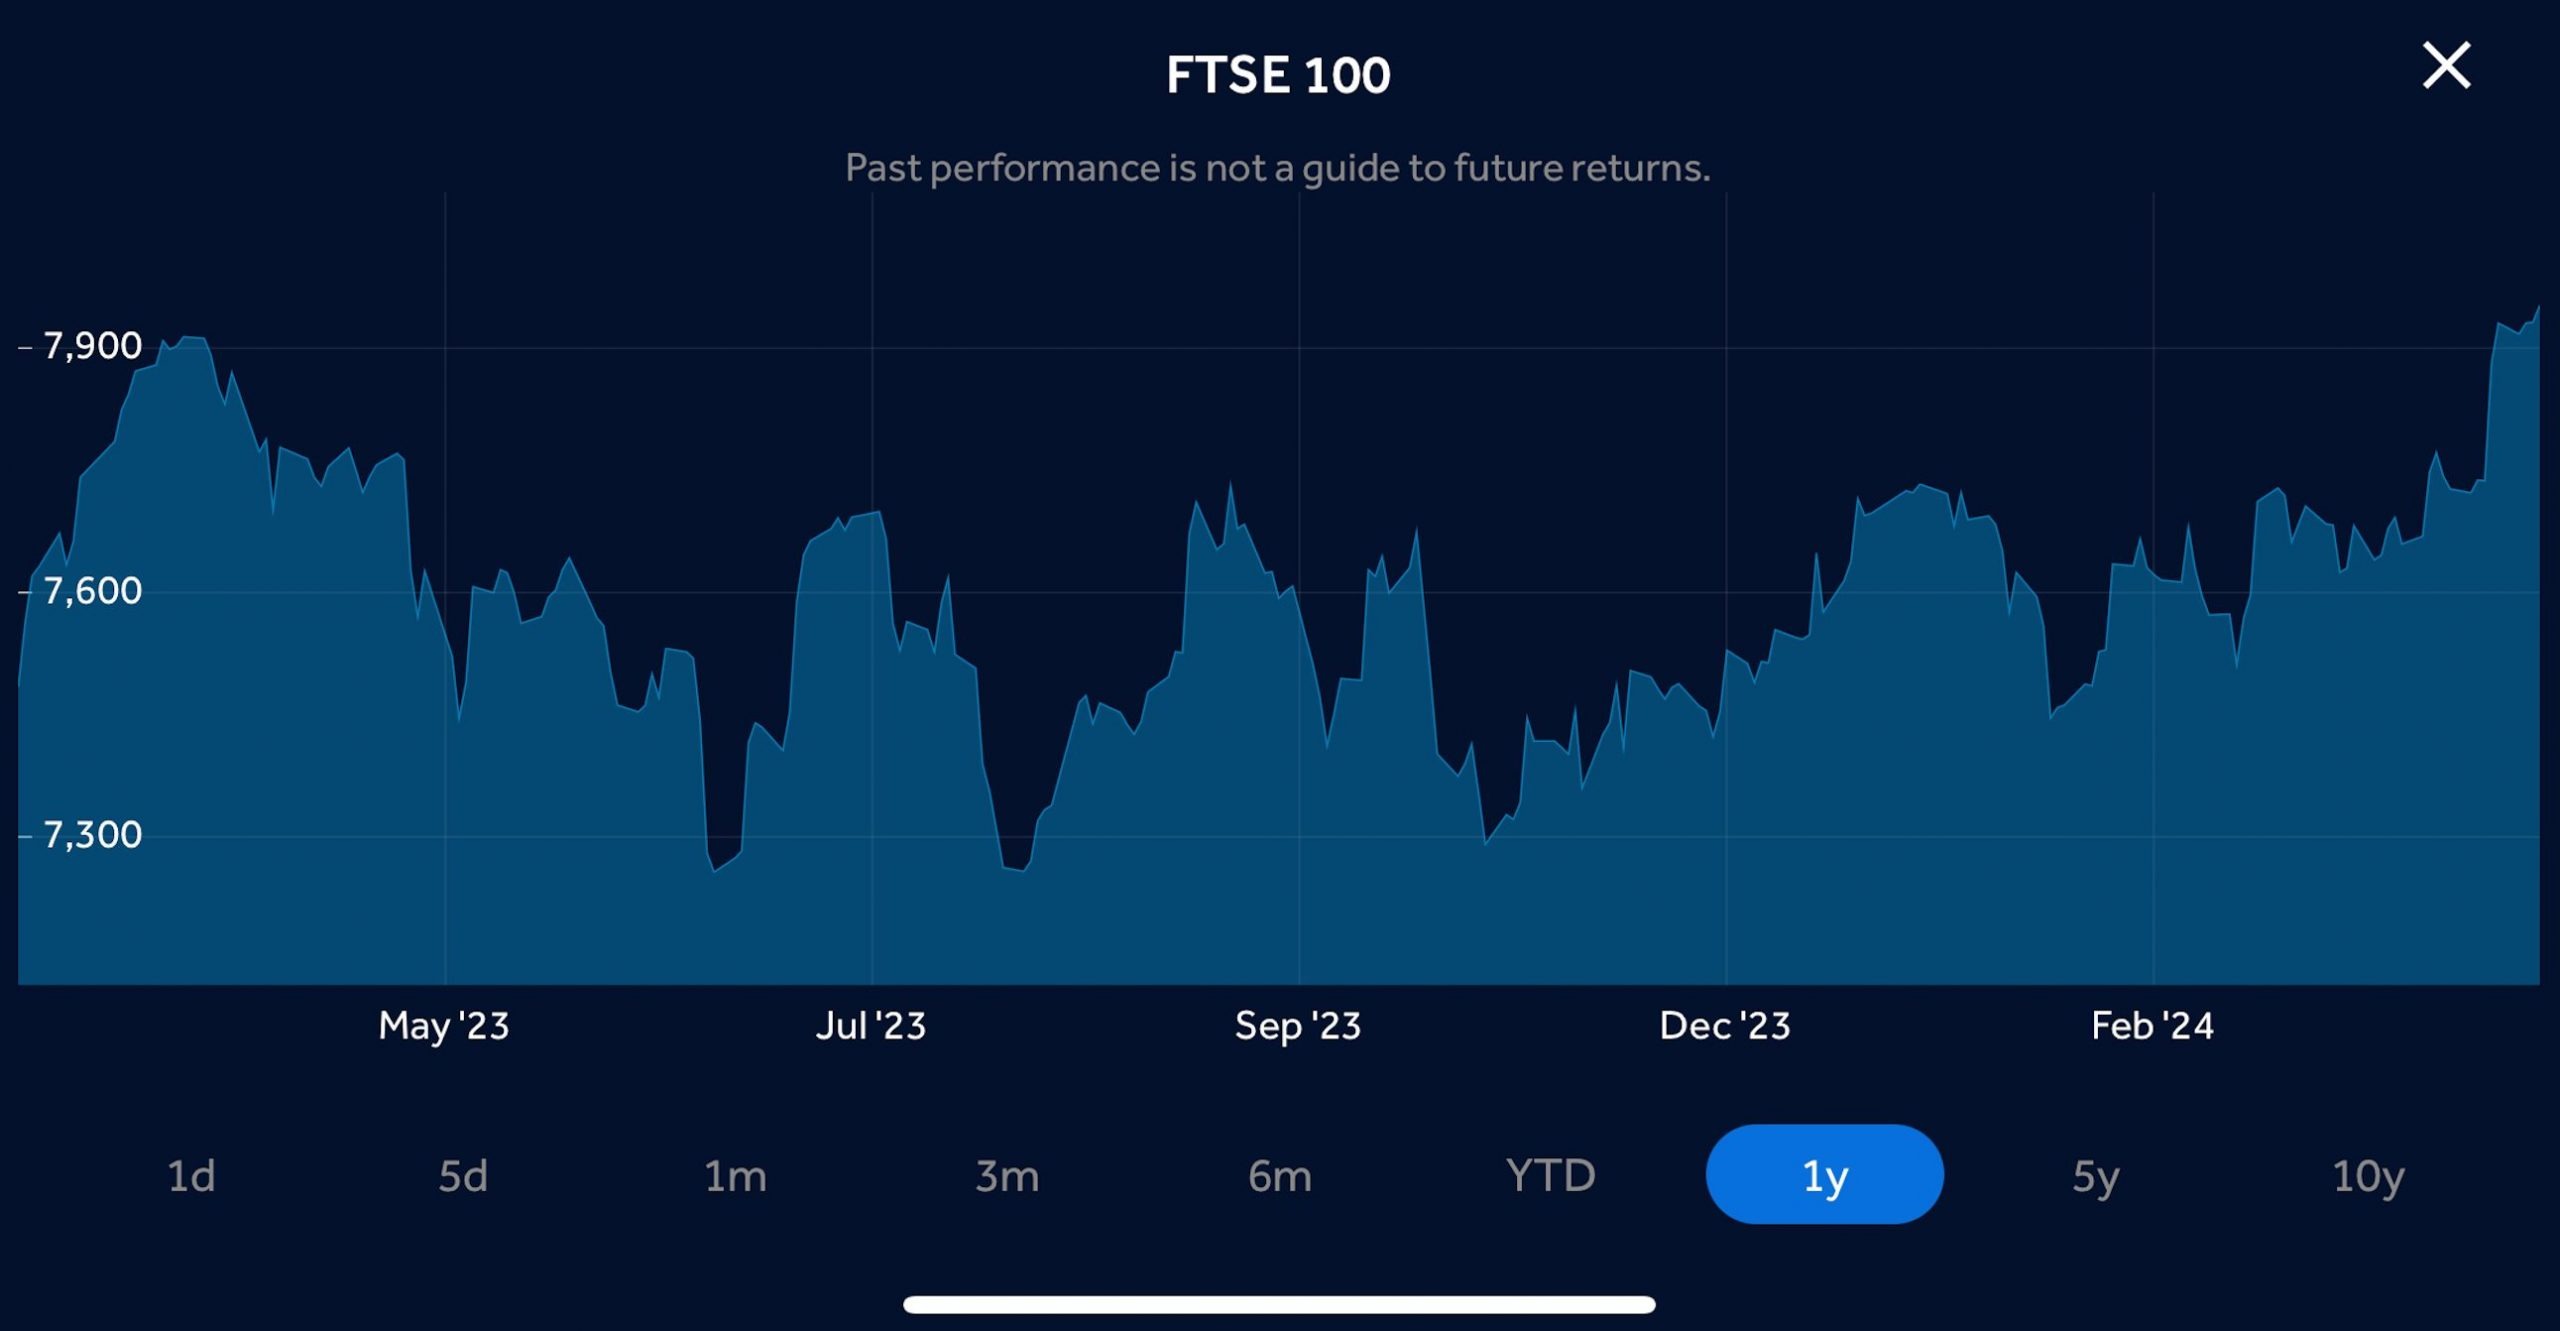 UK FTSE 100 chart in Hargreaves Lansdowne app